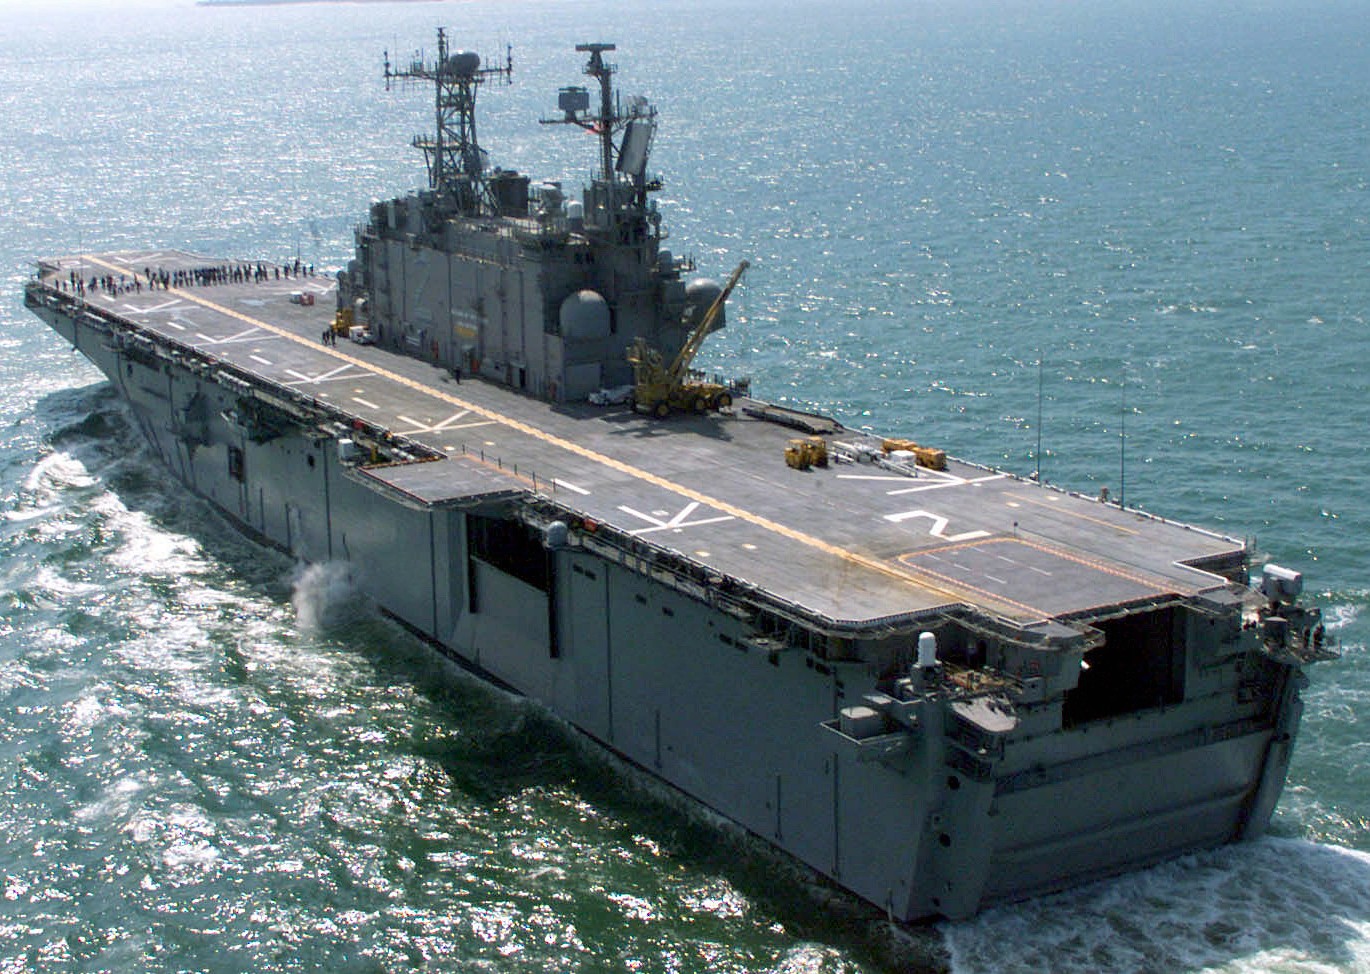 lha-2 uss saipan tarawa class amphibious assault ship us navy 08